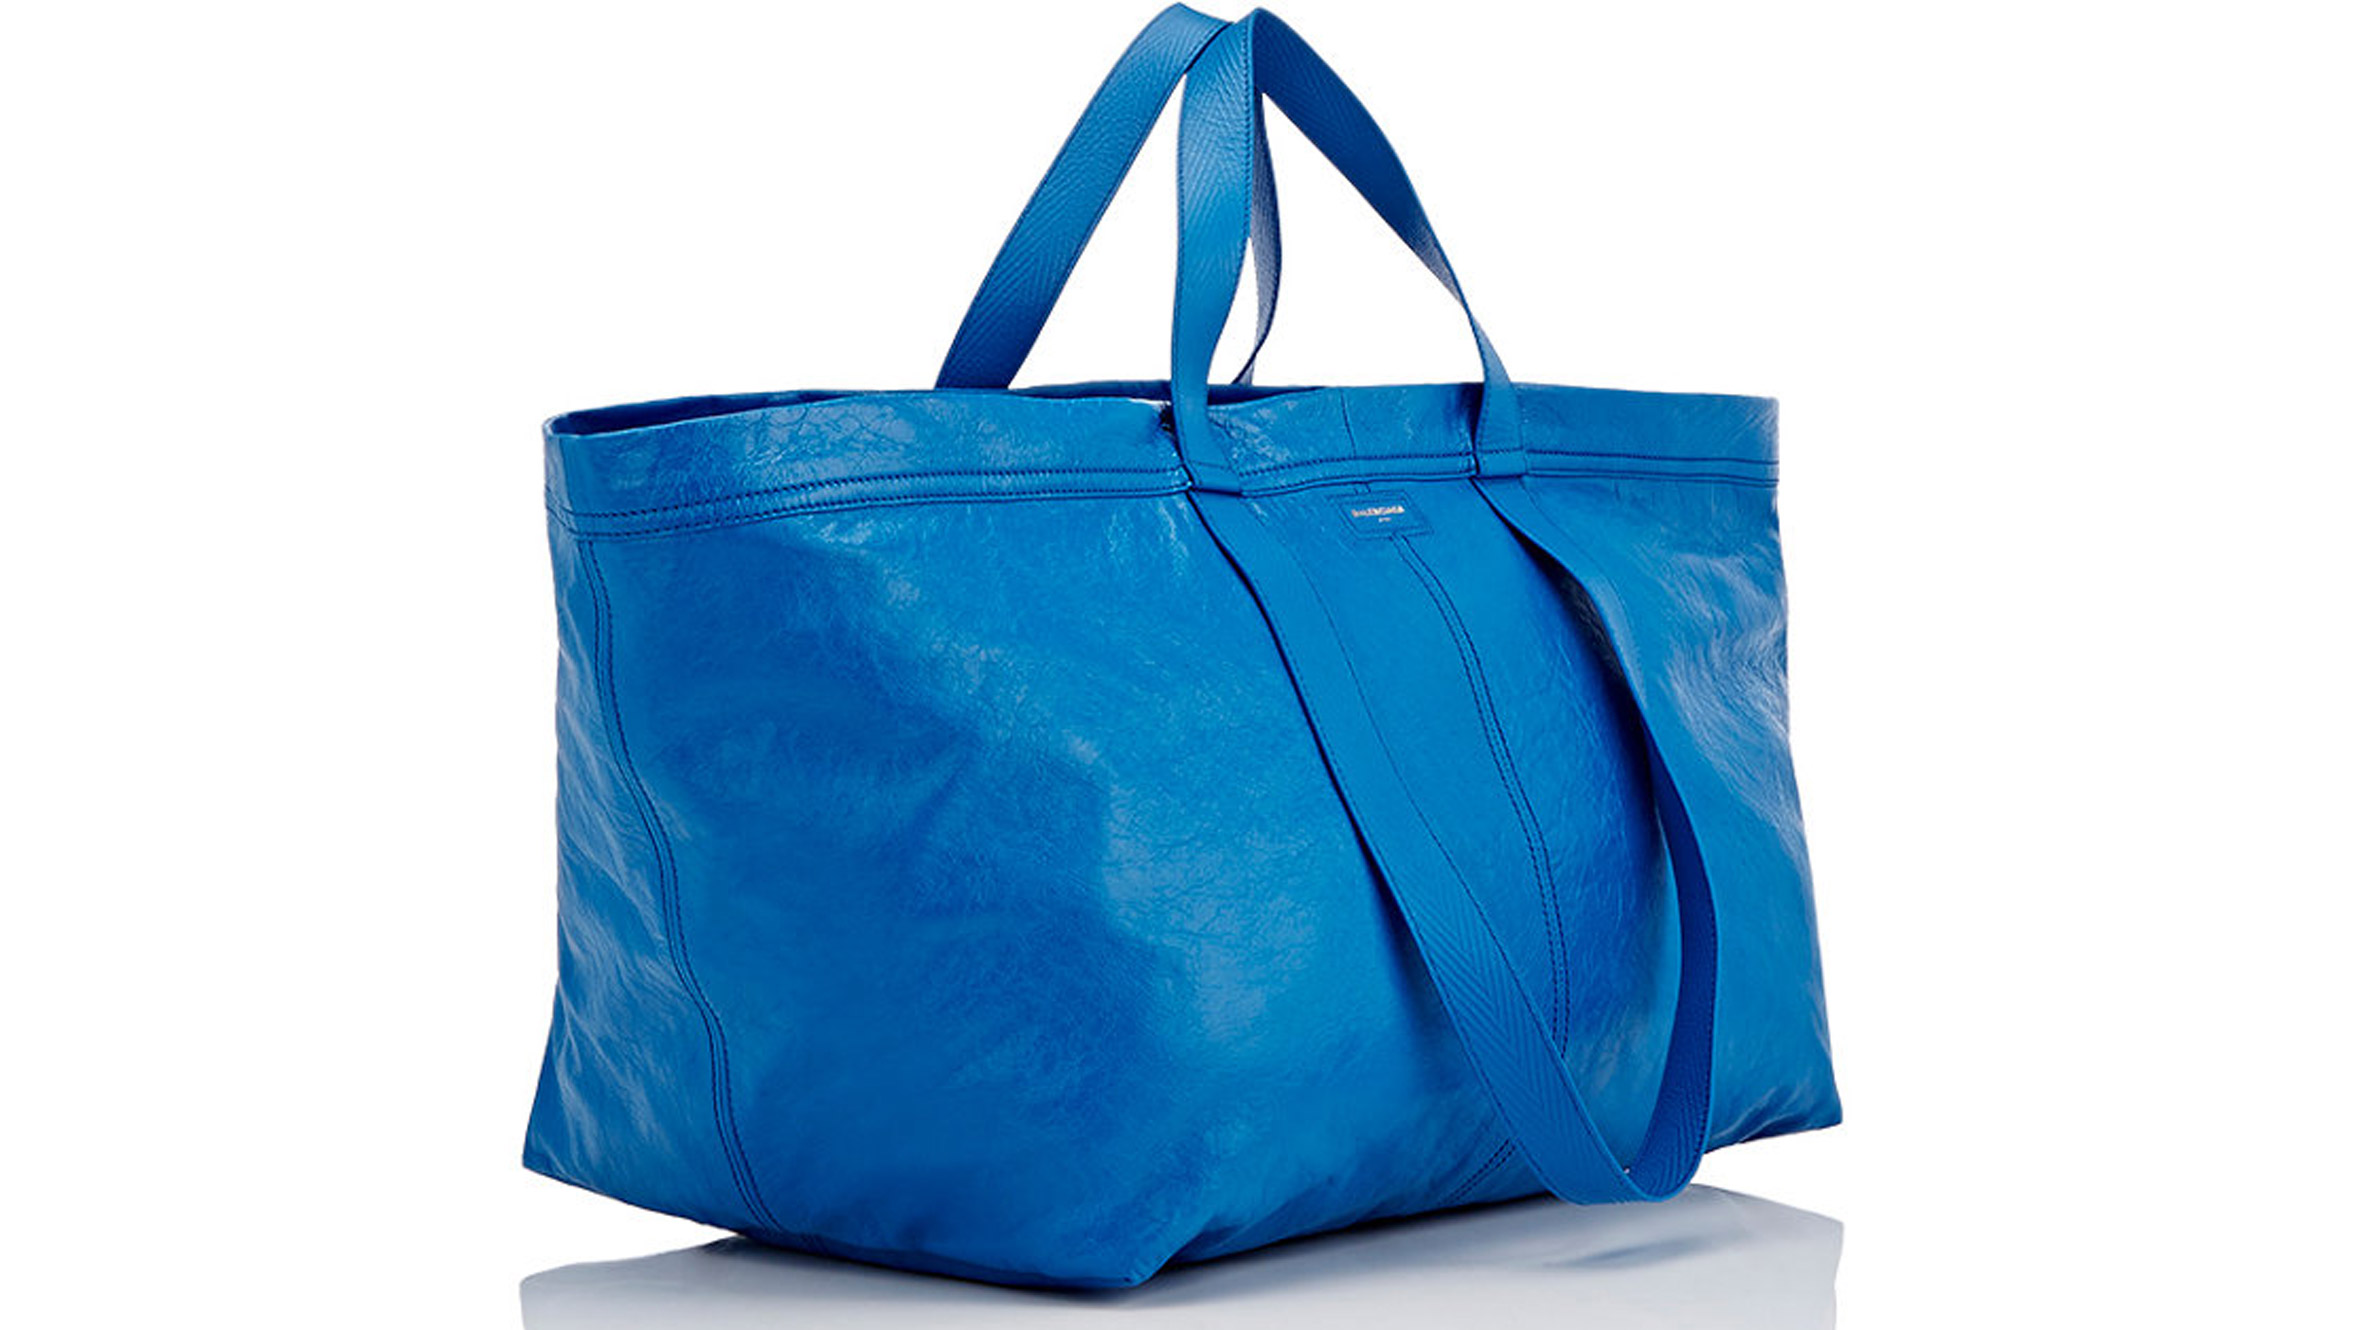 balenciaga-ikea-frakta-bag-fashion-design_dezeen_2364_hero